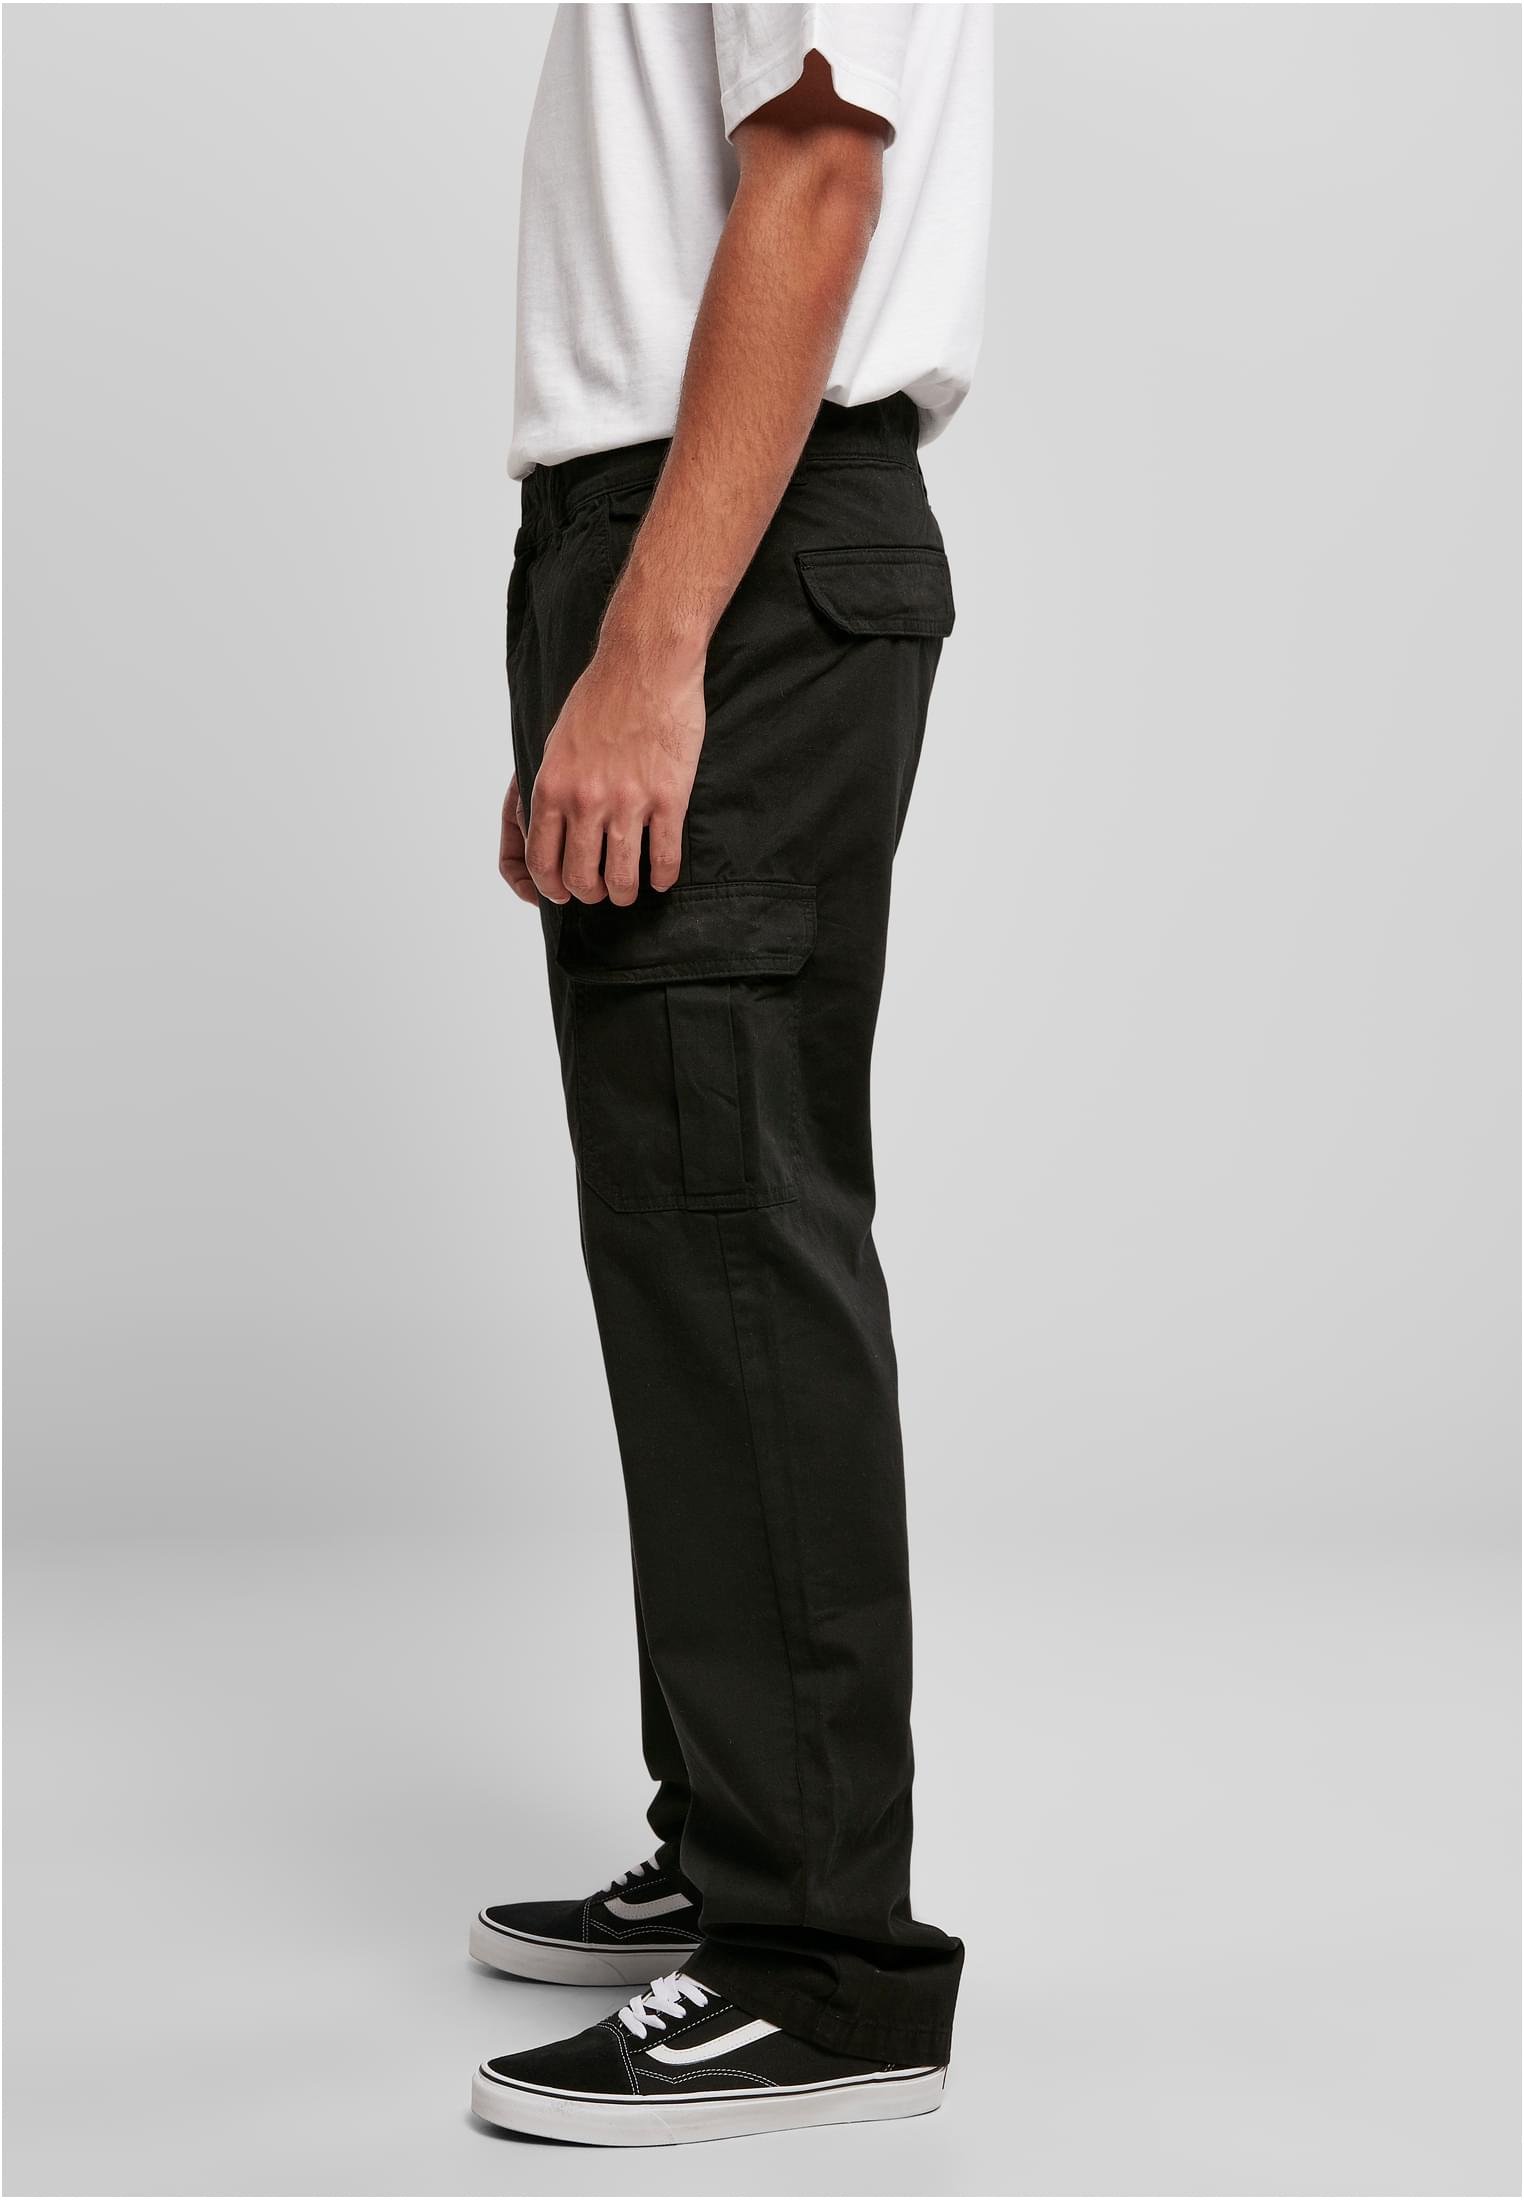 Hosen Straight Leg Cargo Pants in Farbe black